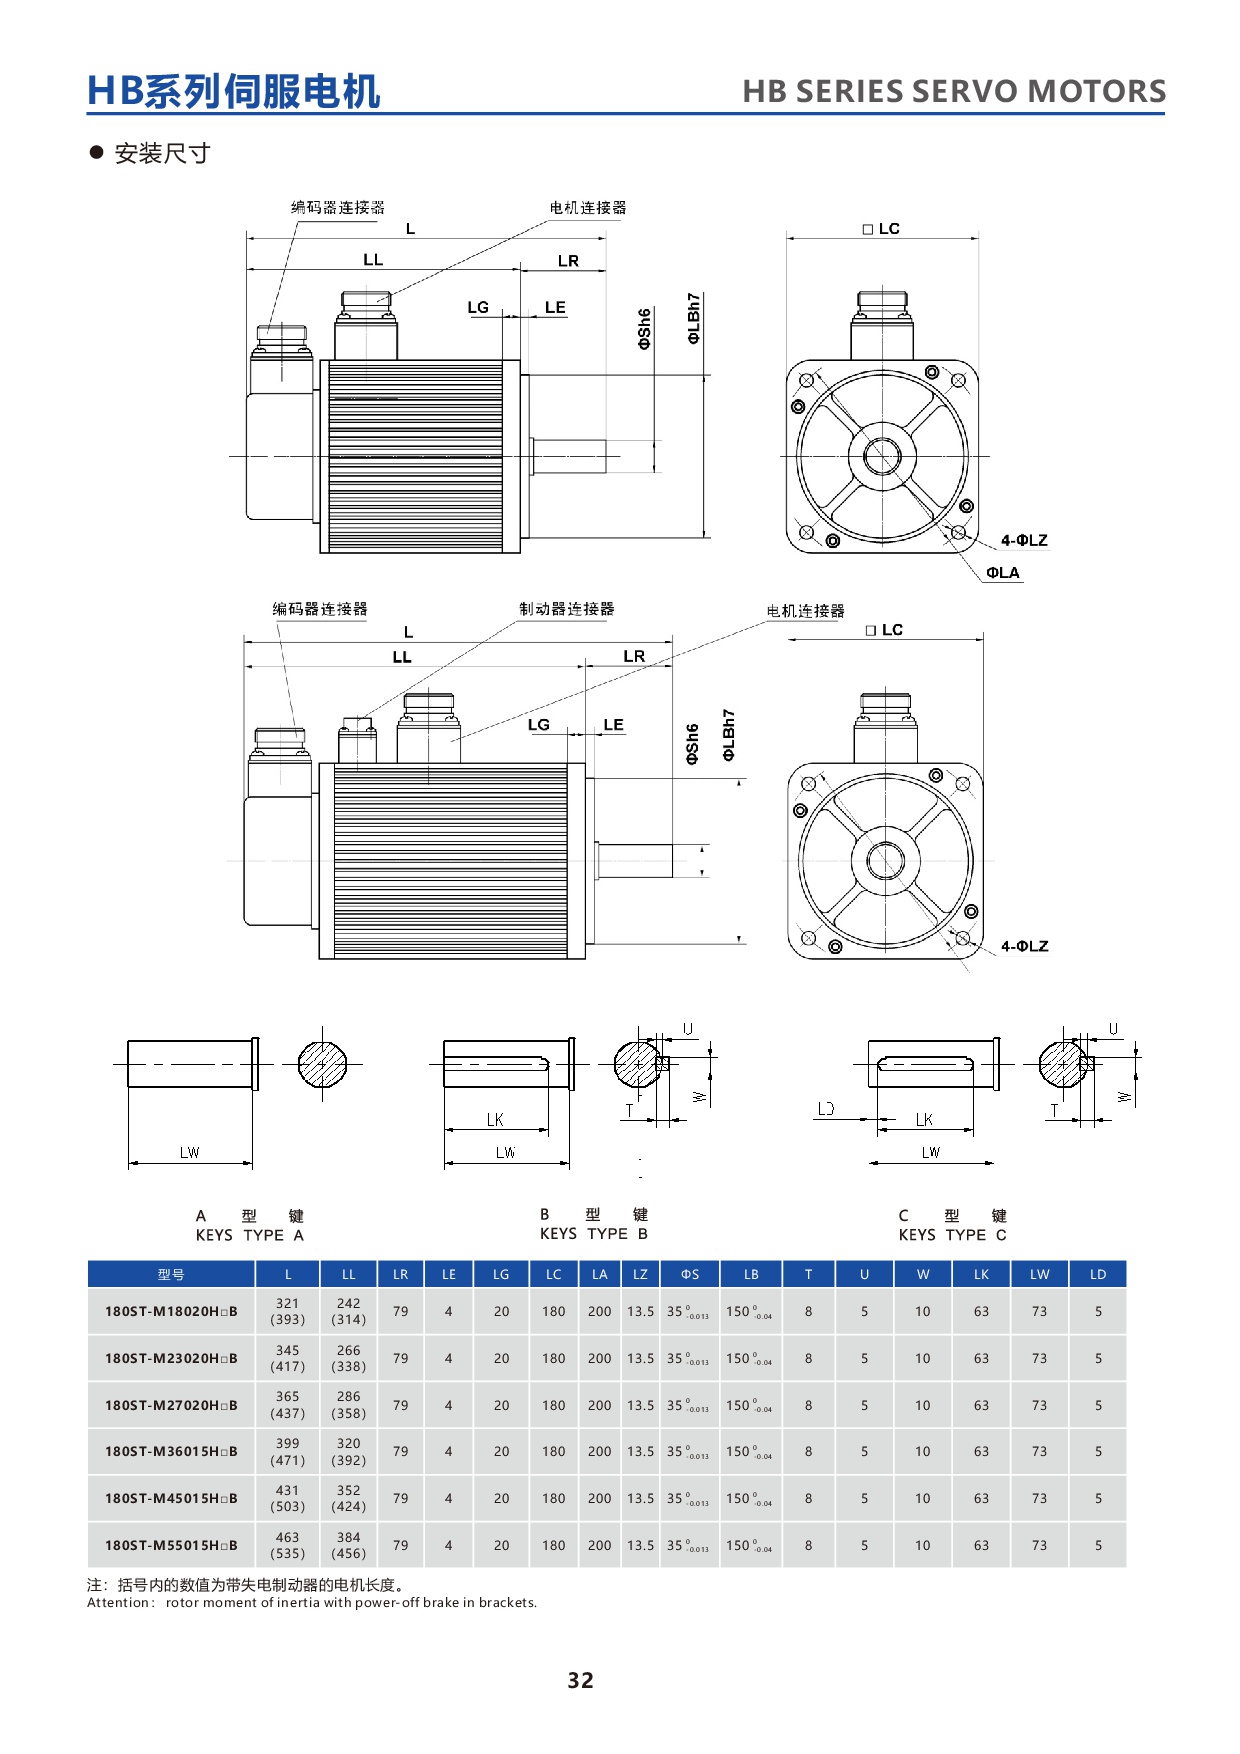 产品特性-30-HBseries180STservomotor2